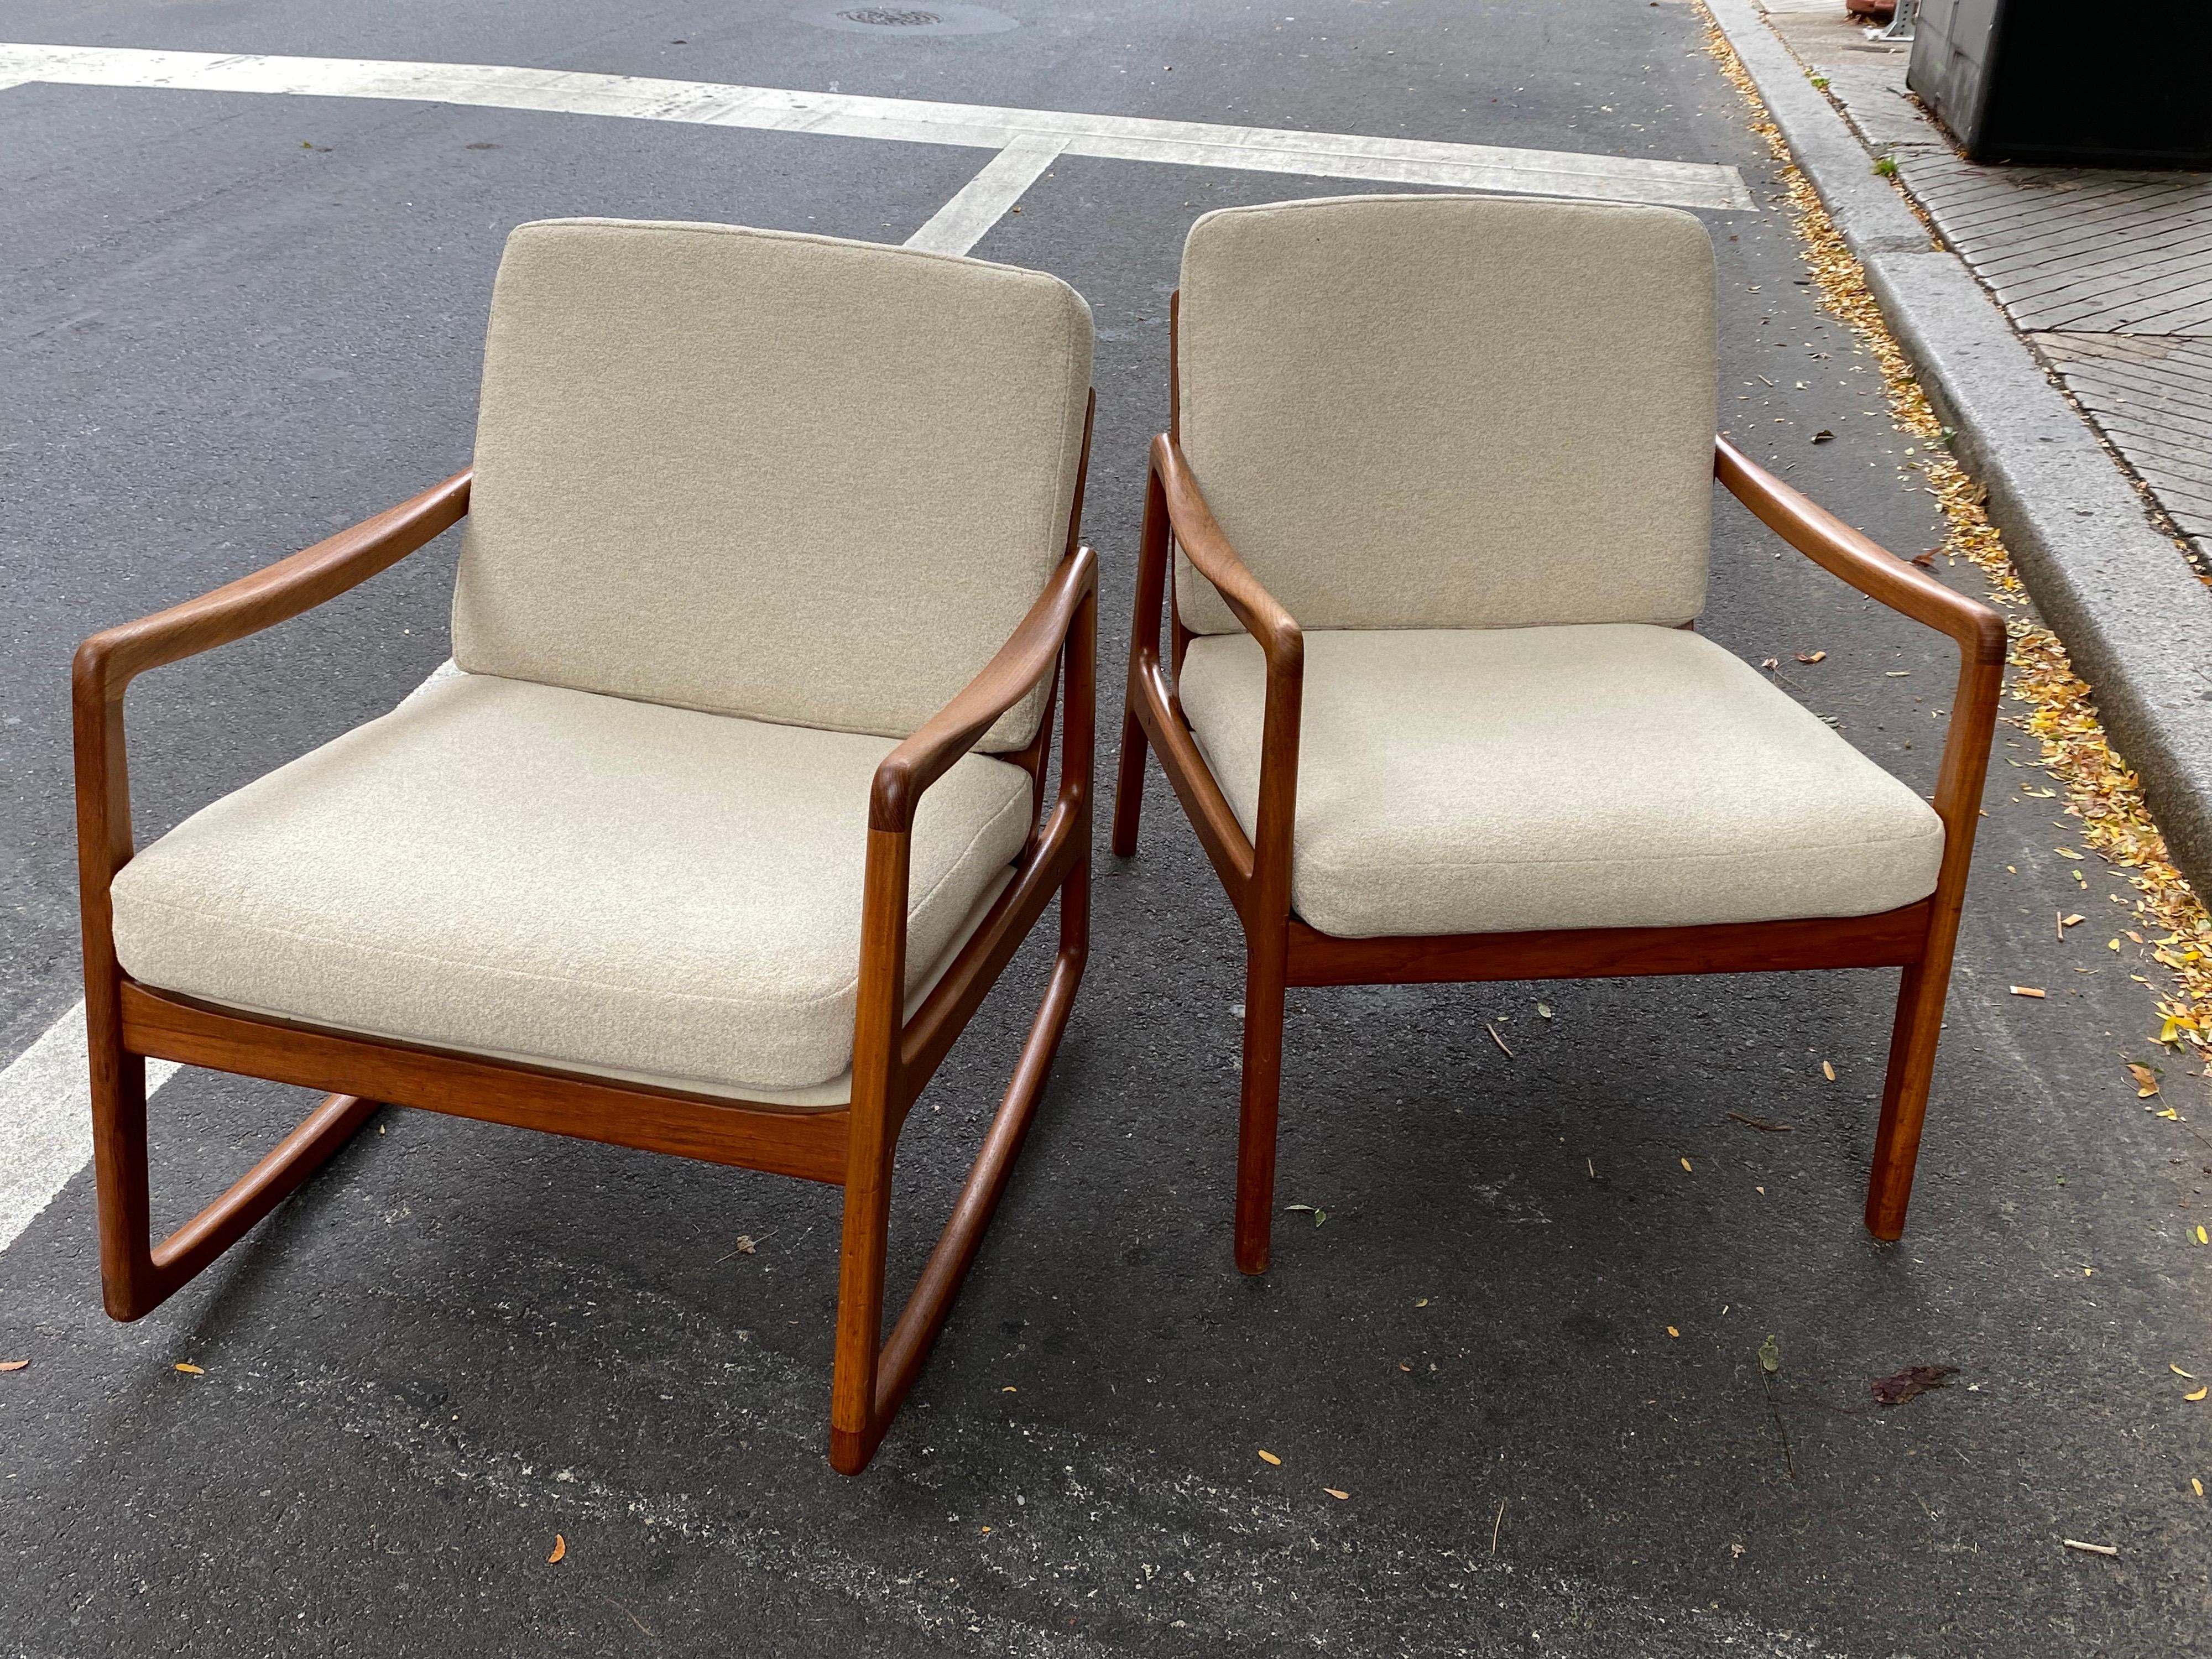 Ole Wanscher Teak Chair and Rocker/ Sold as a Pair 1